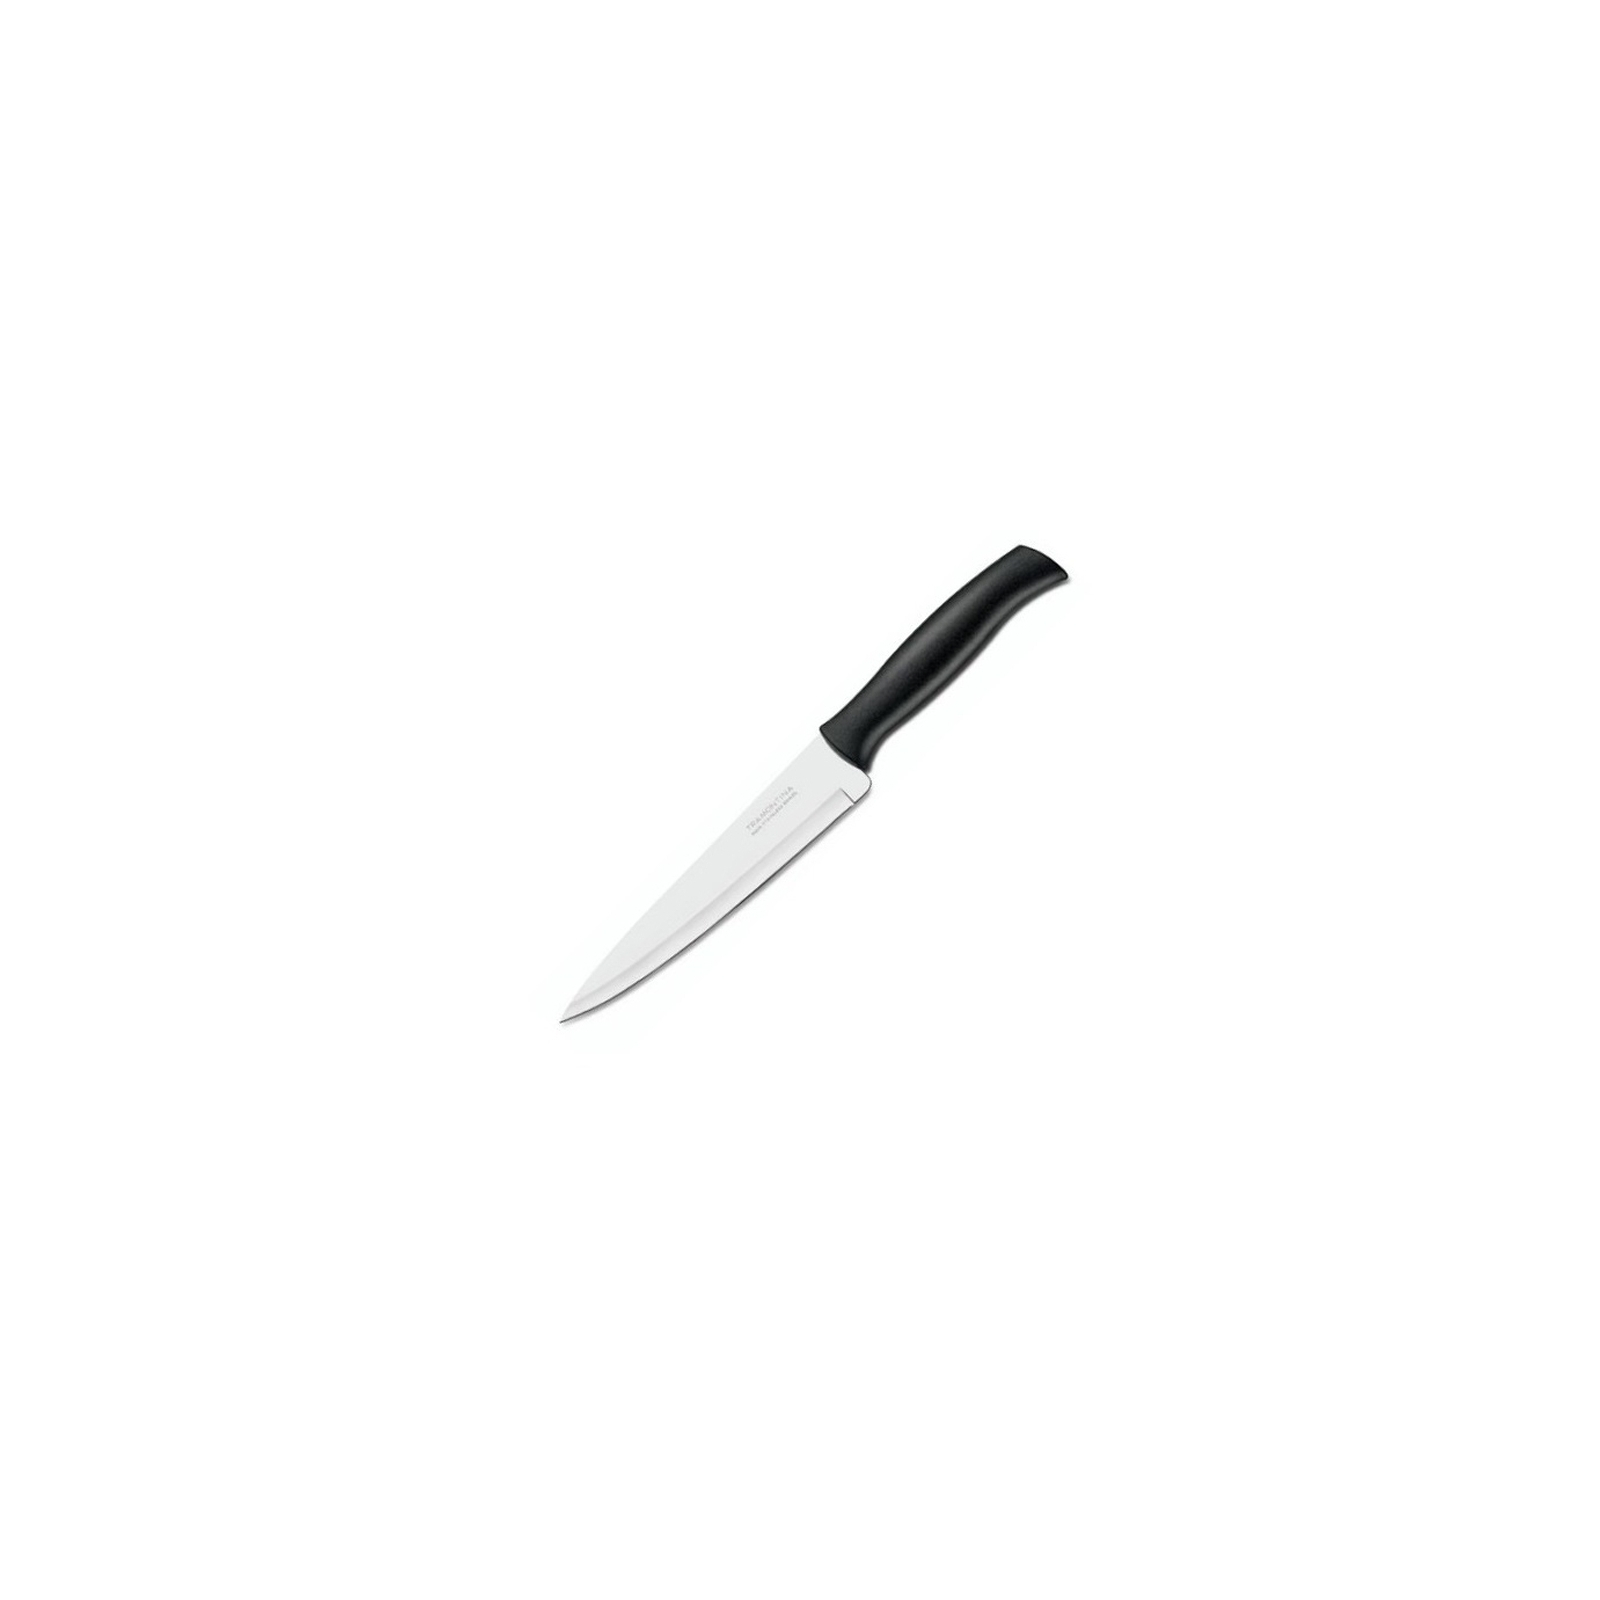 Кухонный нож Tramontina Athus универсальный 152 мм Black (23084/106)